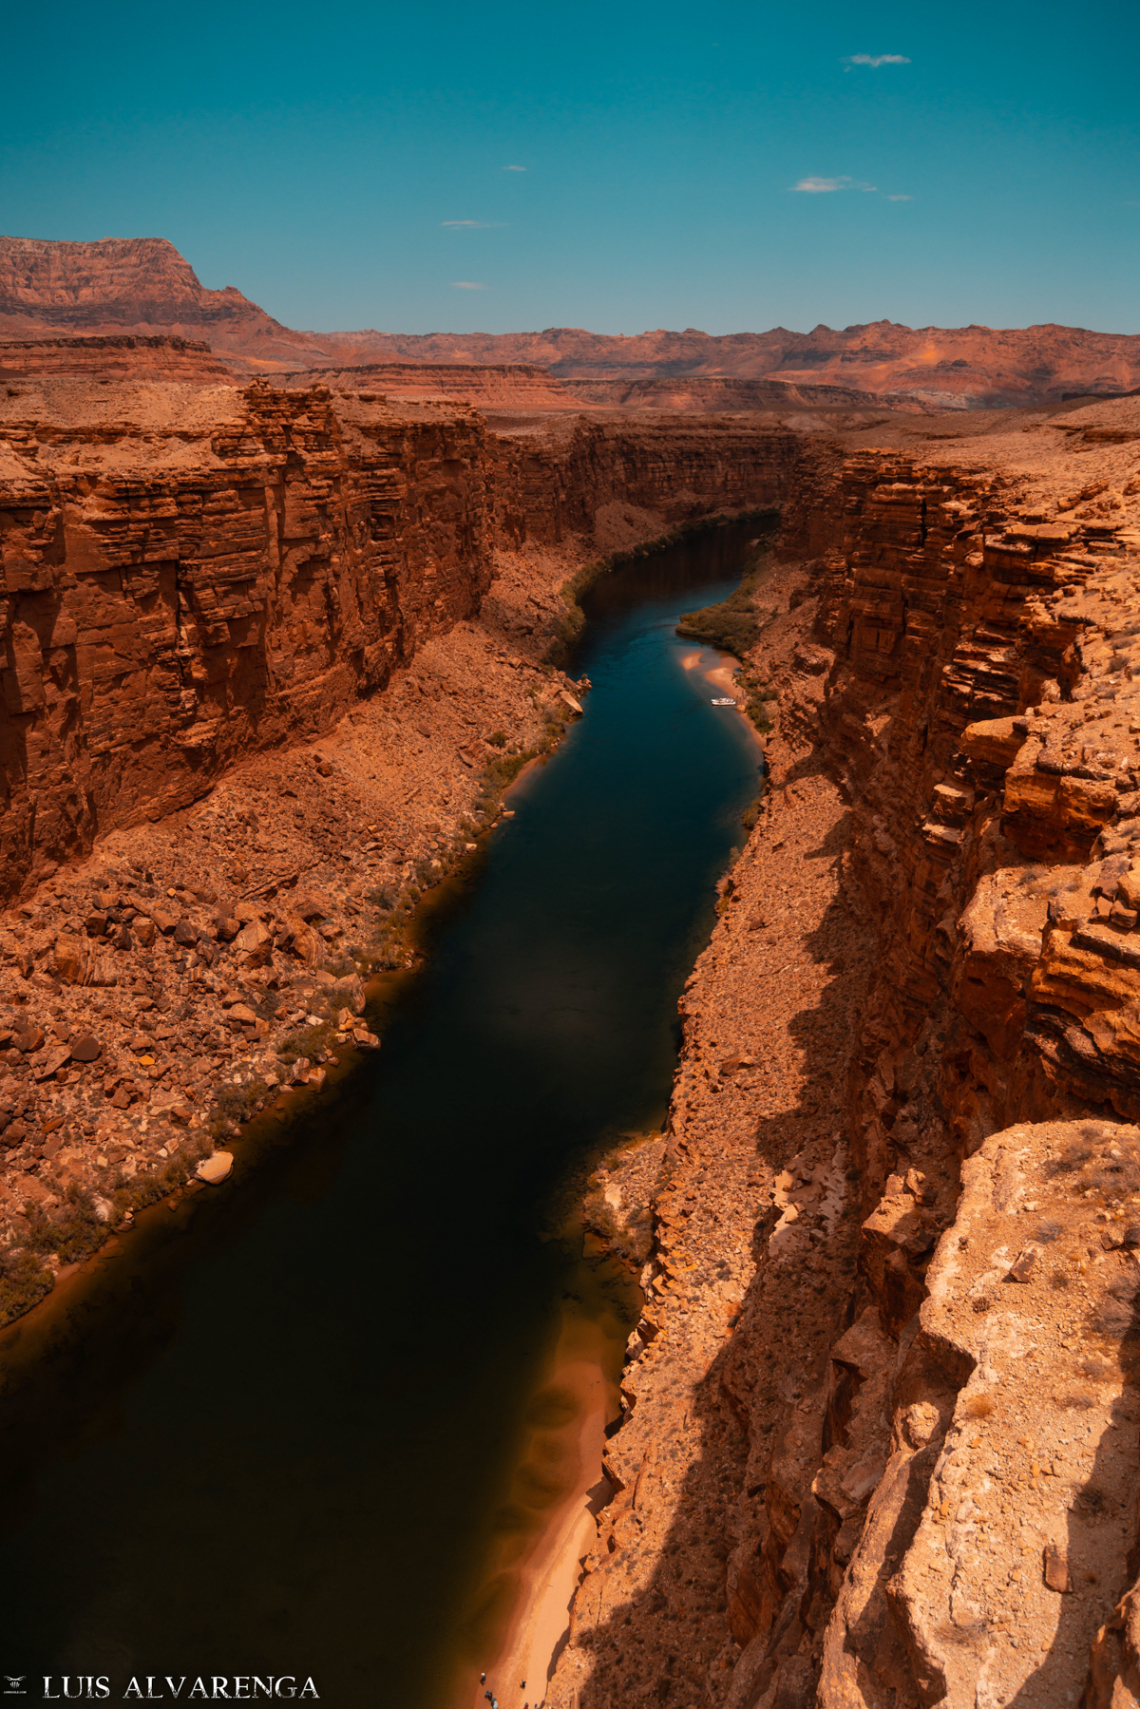 Luis Alvarenga - Marble Canyon, Colorado River